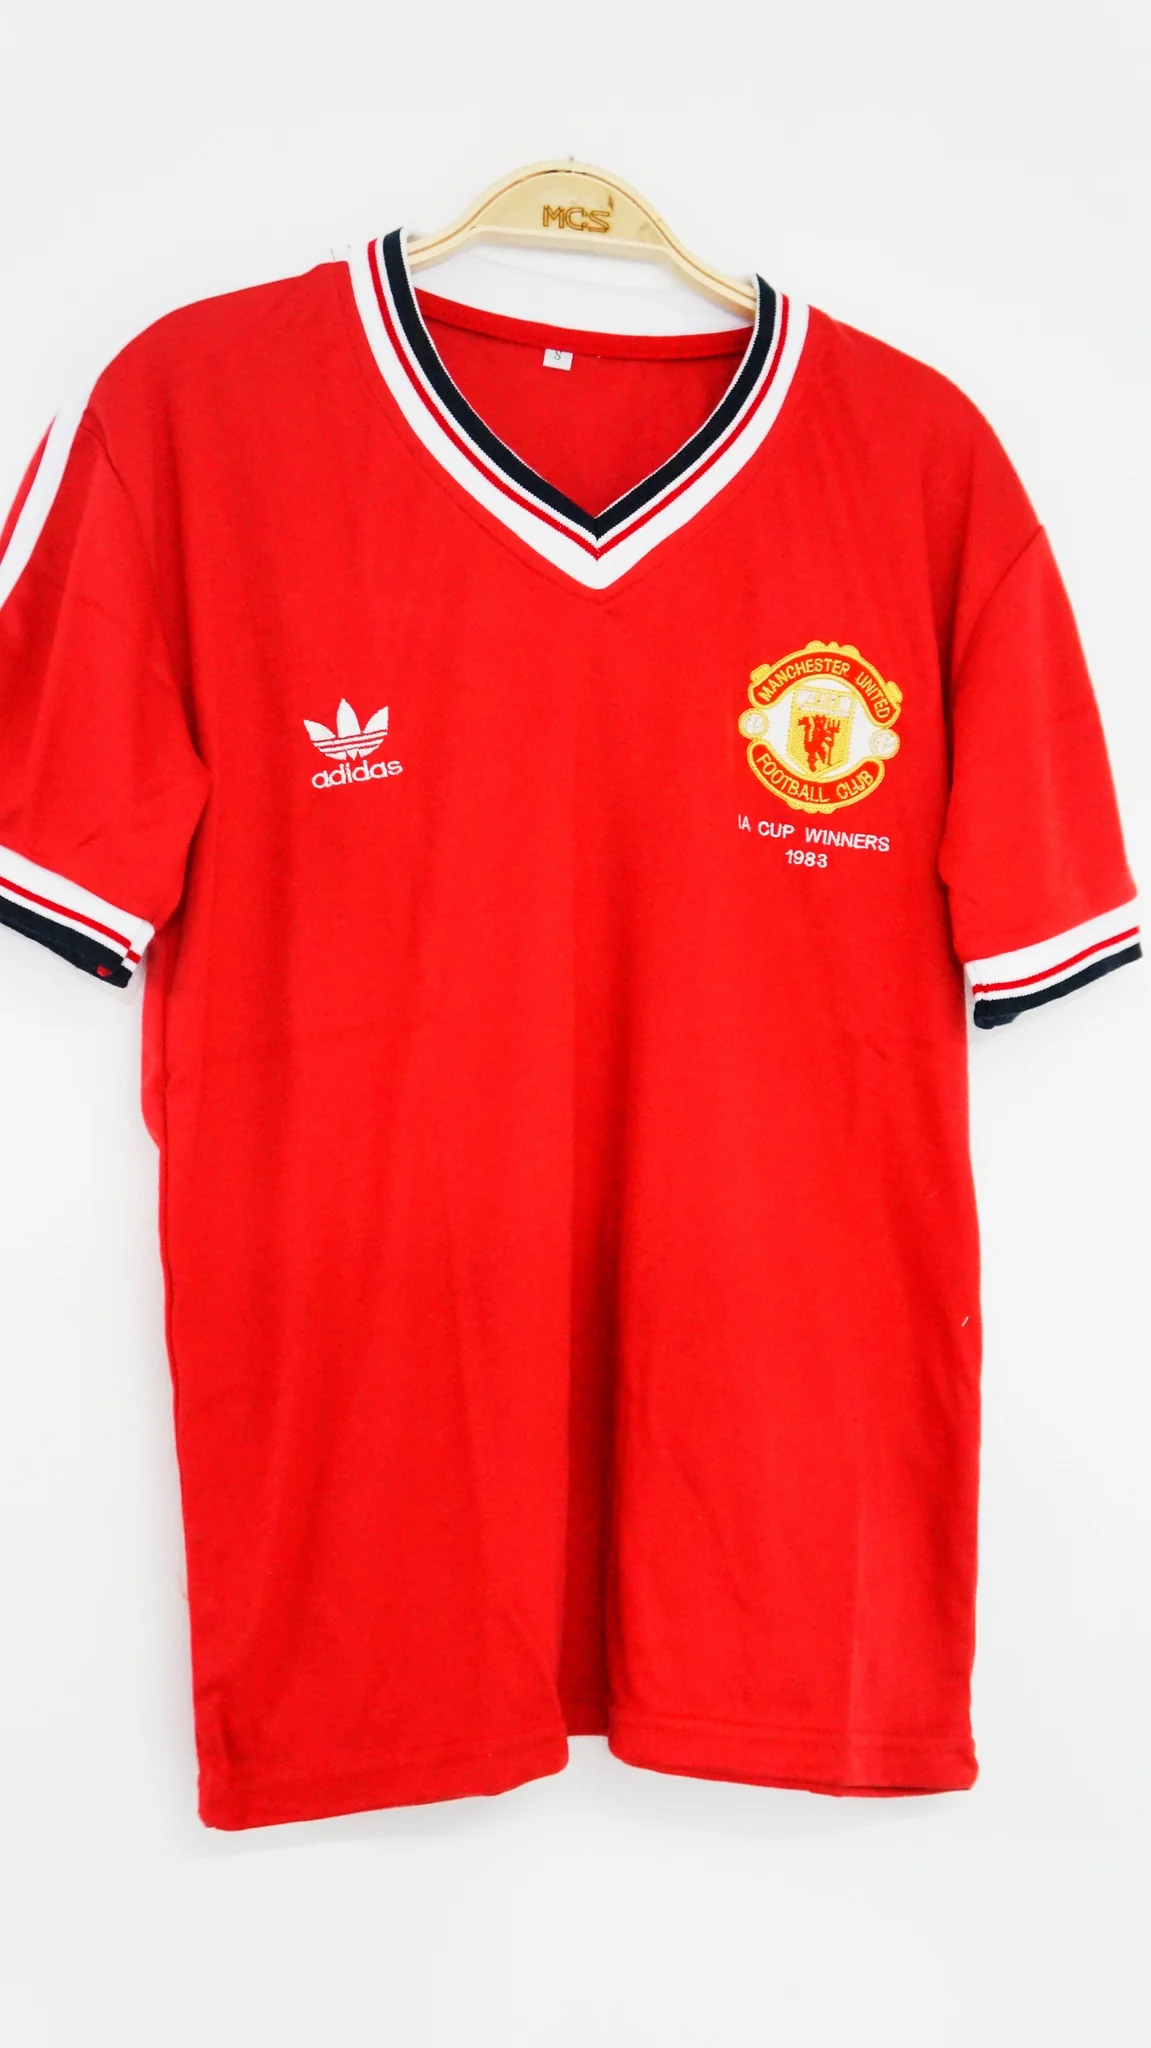 El Manchester United de 1980. Gloriosos días de camisetas emblemáticas3